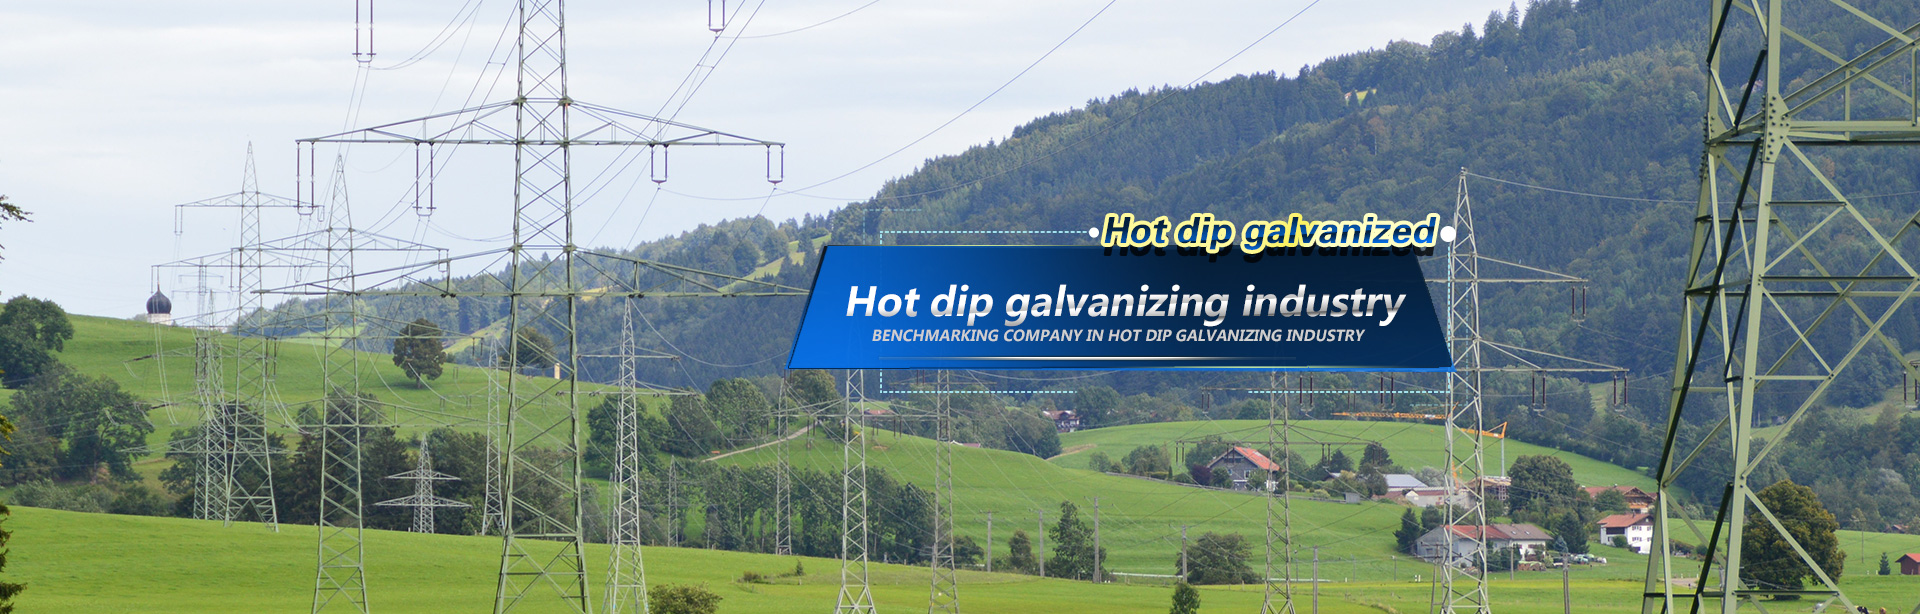 Hot-dip galvanizer